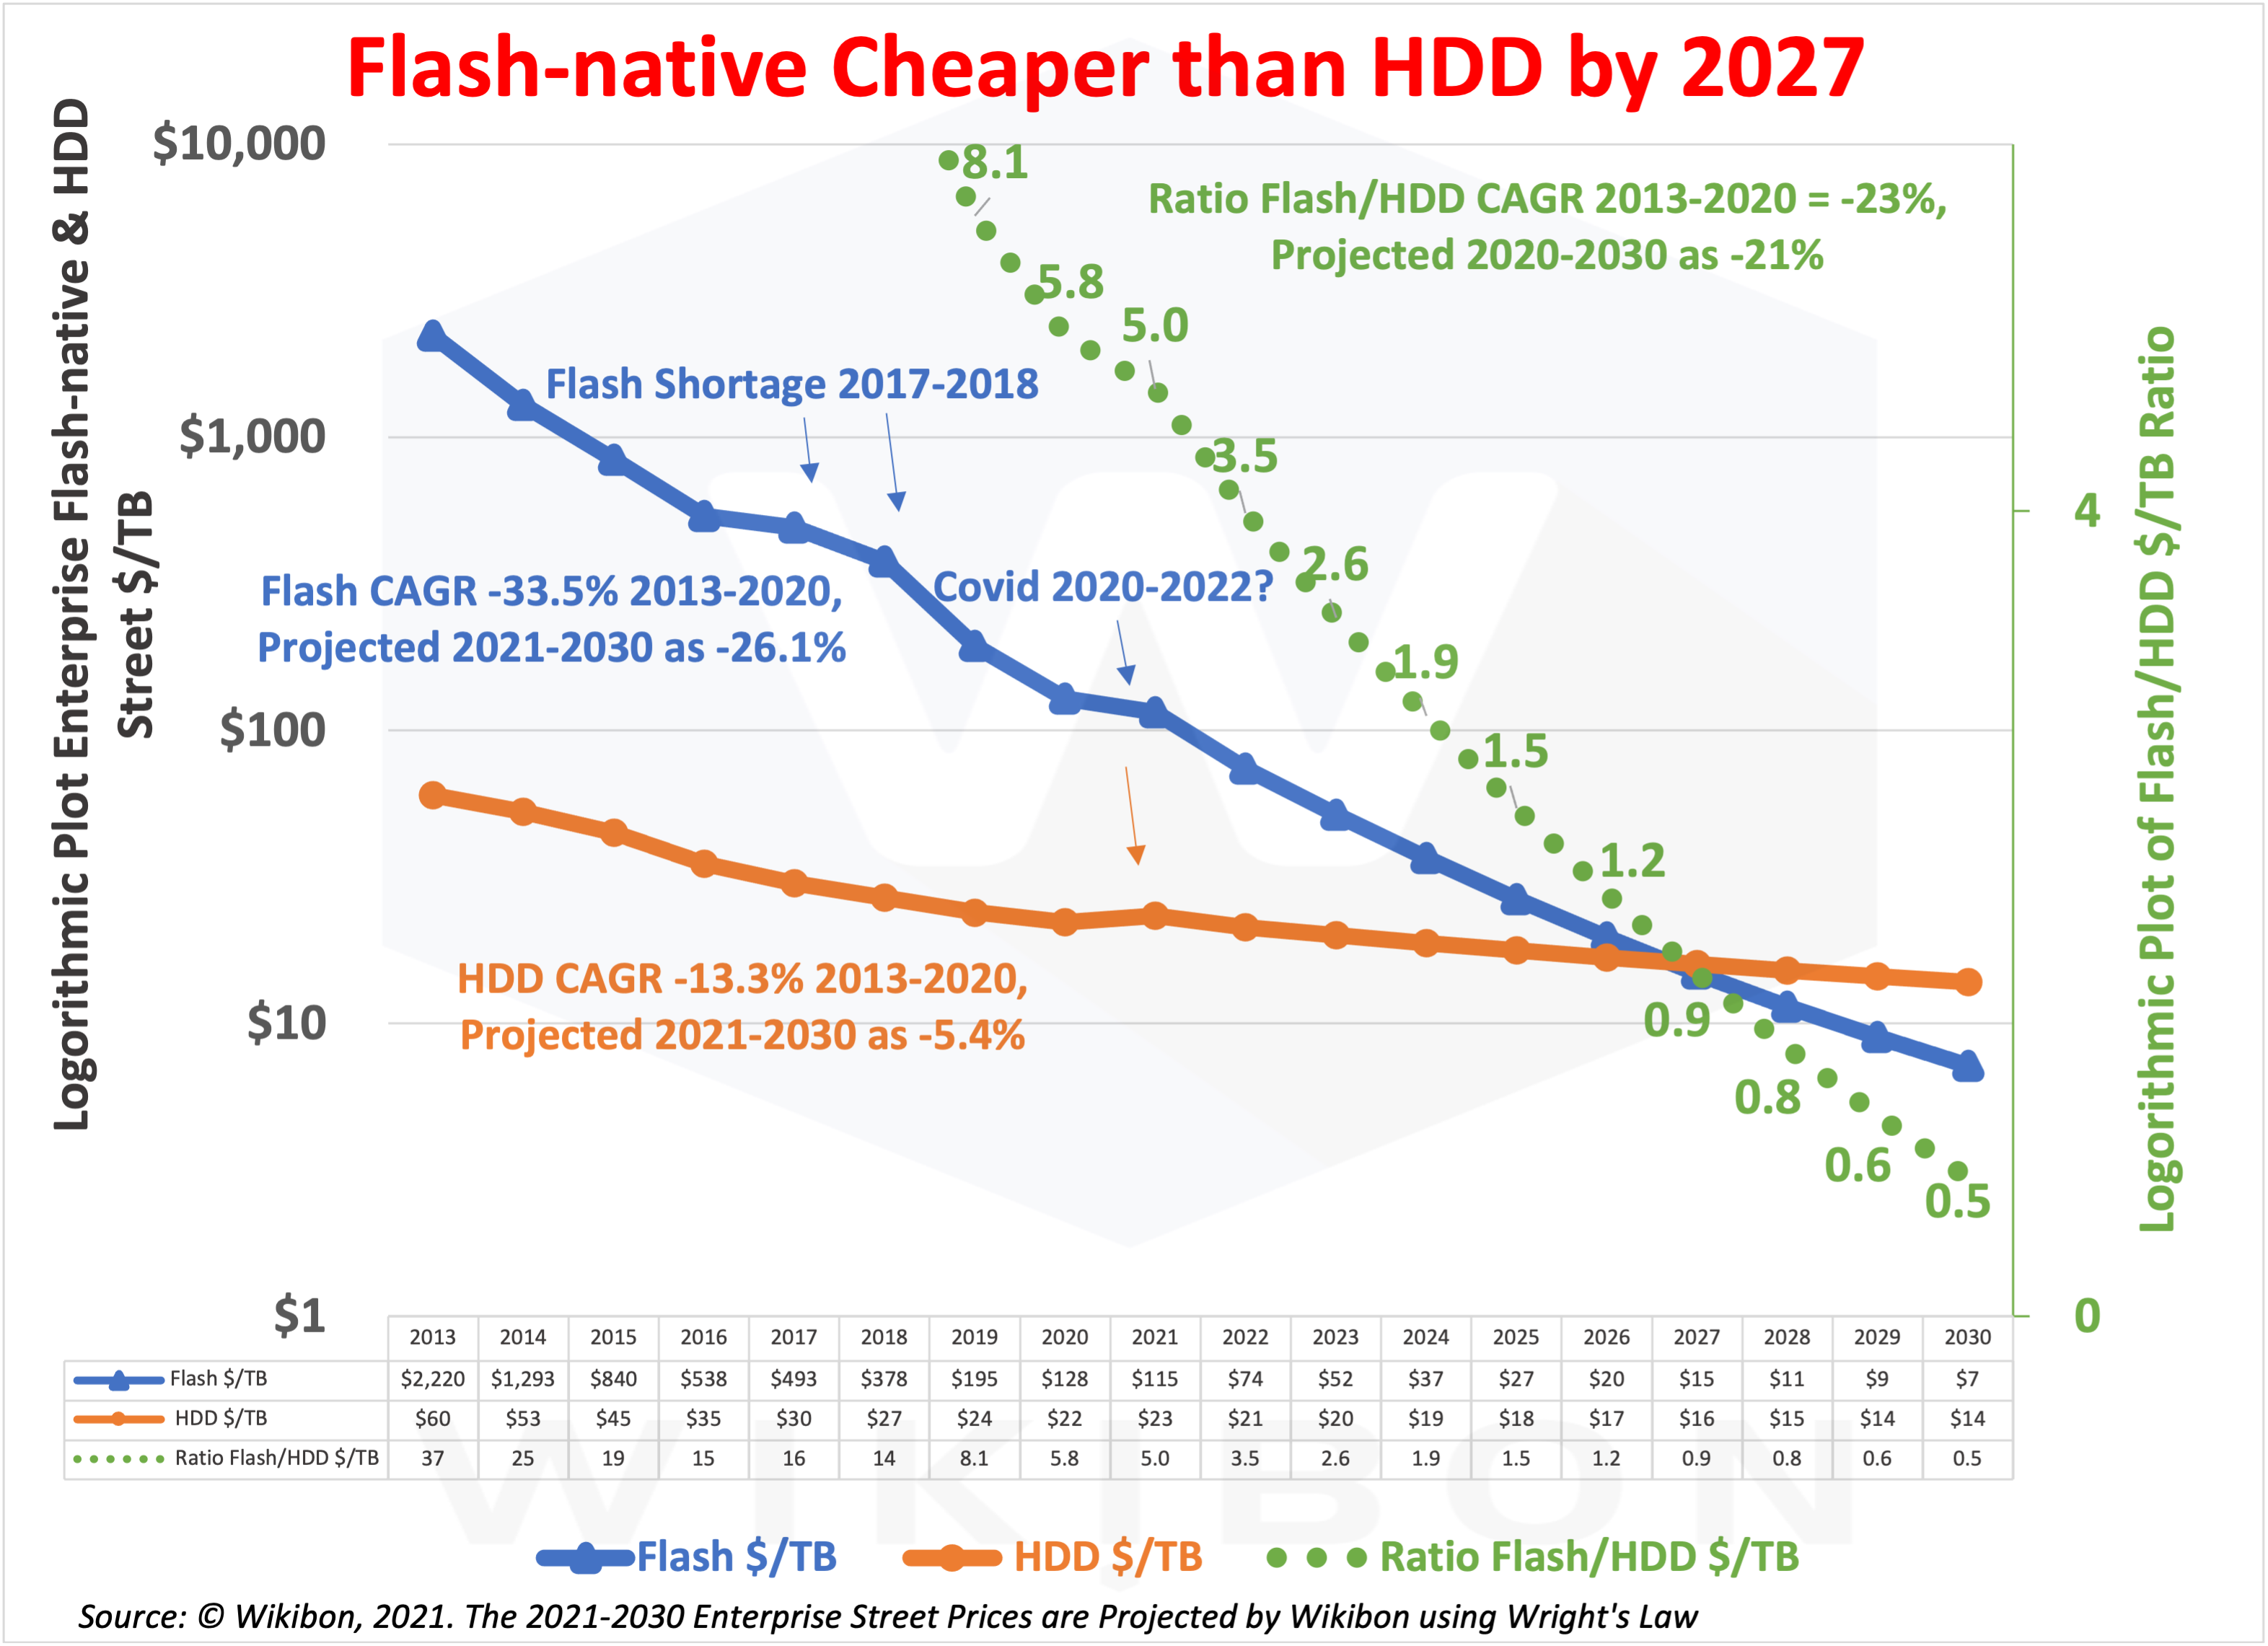 Log-Plot Flash, HDD, & Flash/HDD Ratio